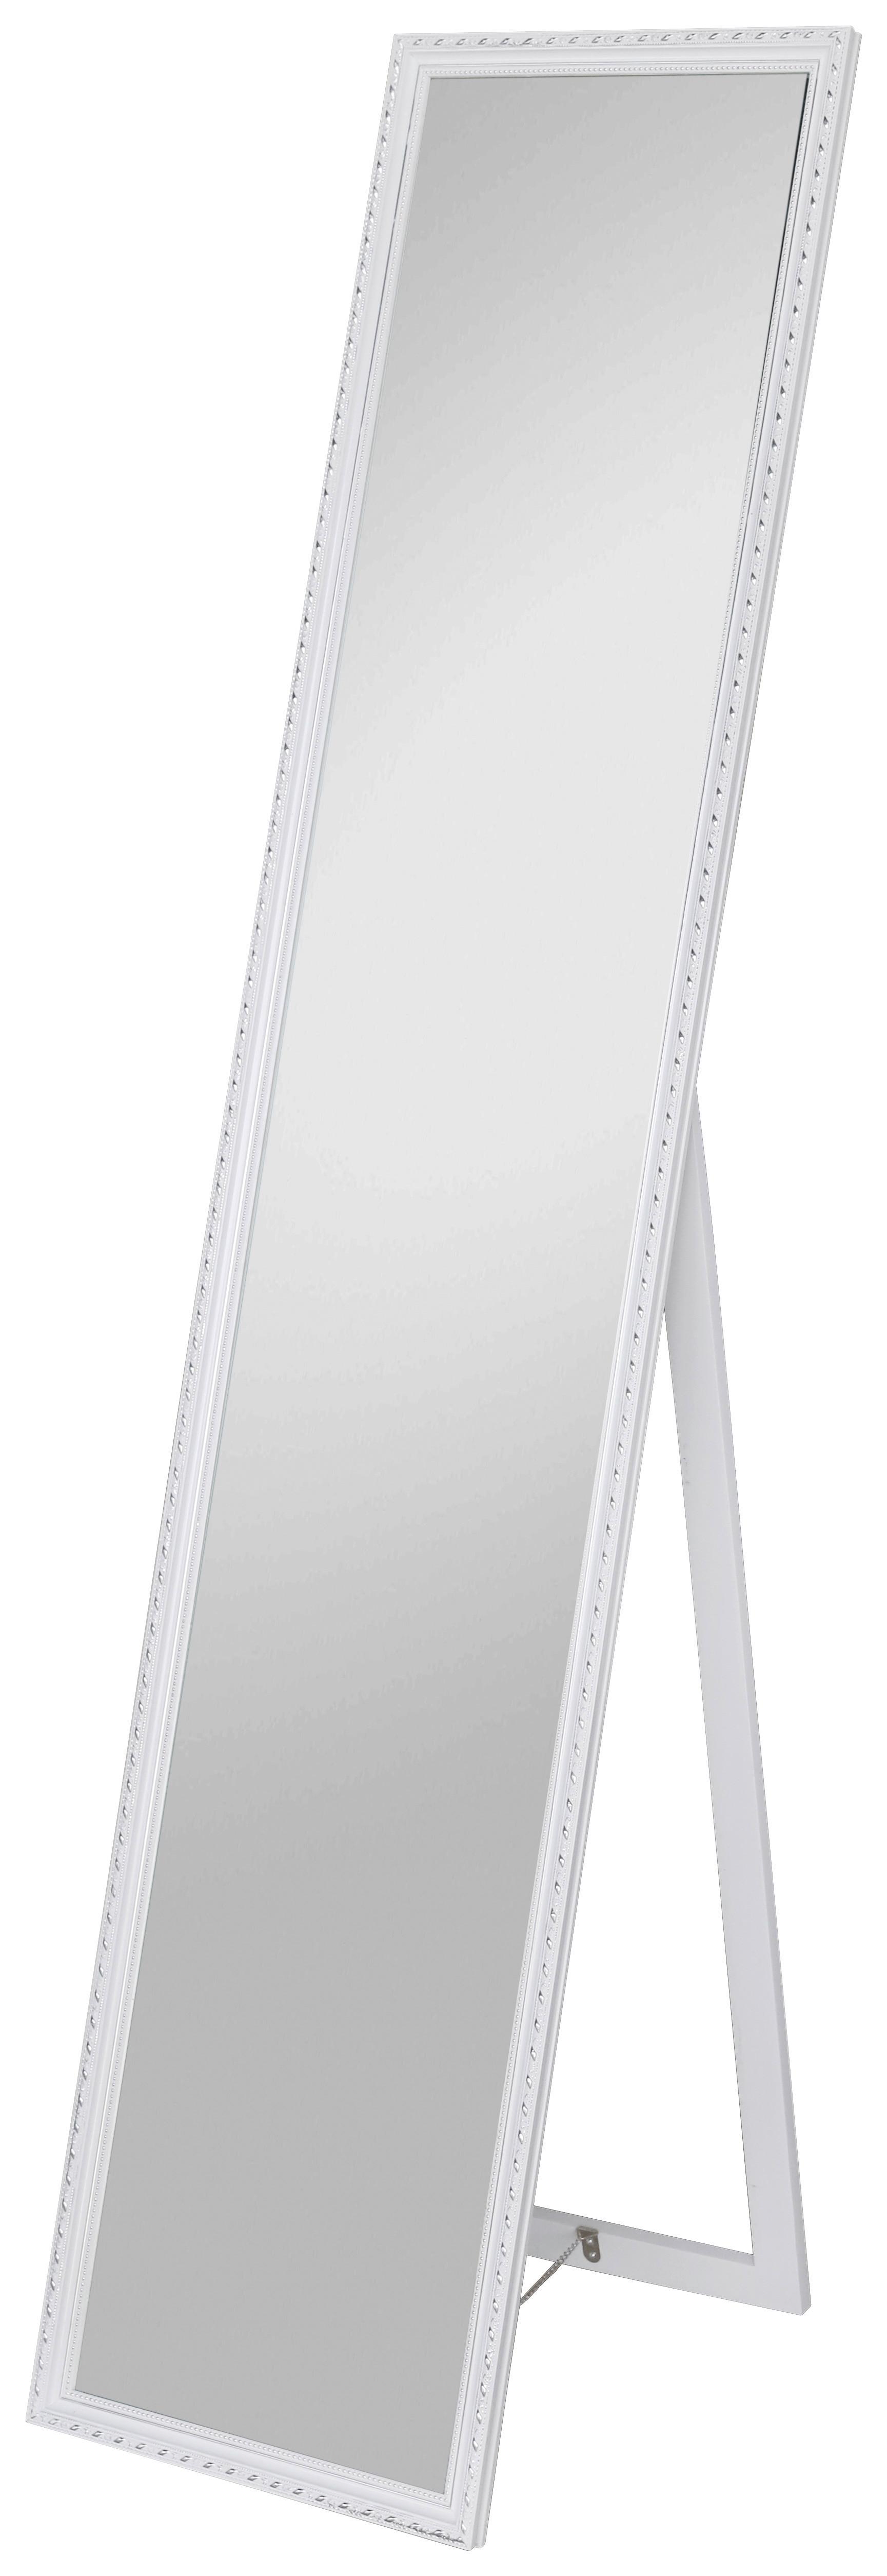 Standspiegel Pisa Rechteckig 34x160 cm mit Holzrahmen Weiß - Silberfarben/Weiß, MODERN, Glas/Holz (34/160/2,3cm)